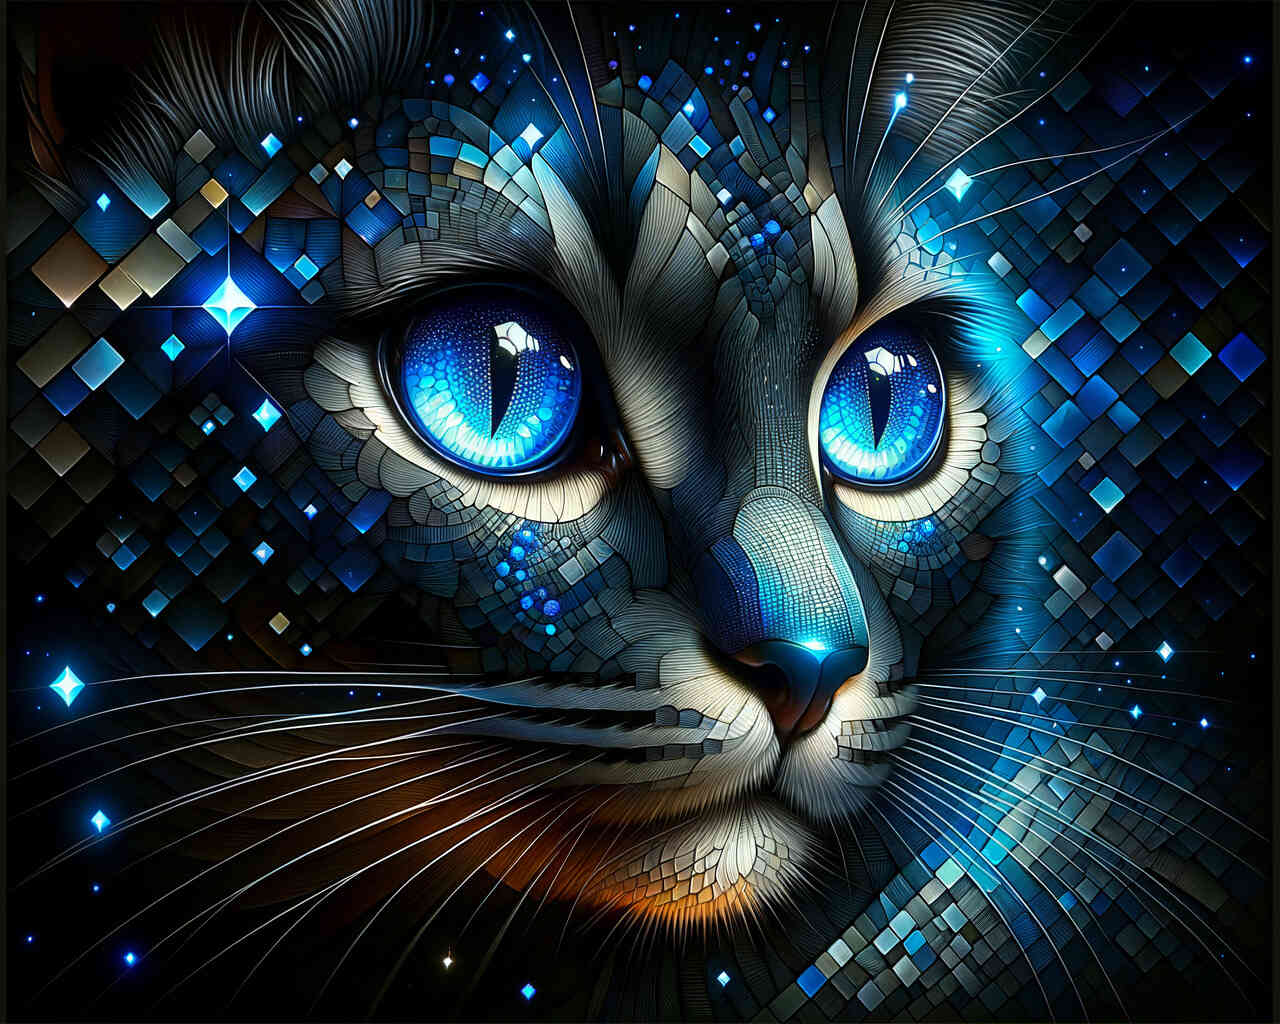 Diamond Painting - Katze mit Blauen Augen